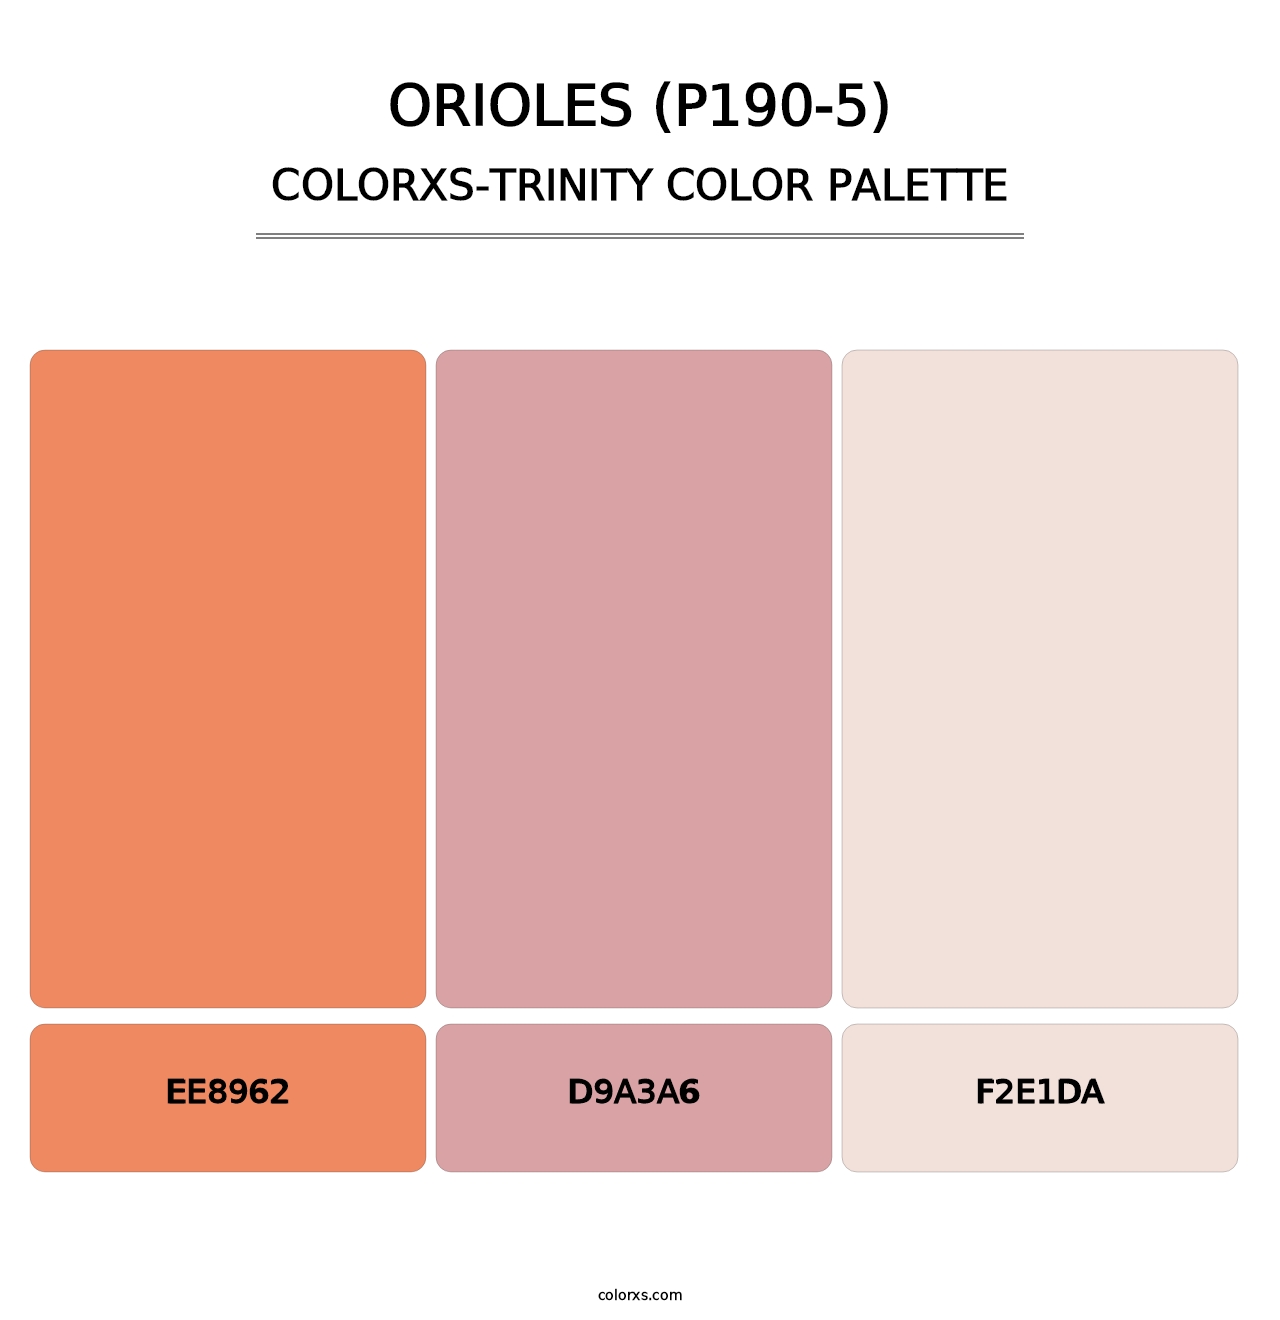 Orioles (P190-5) - Colorxs Trinity Palette